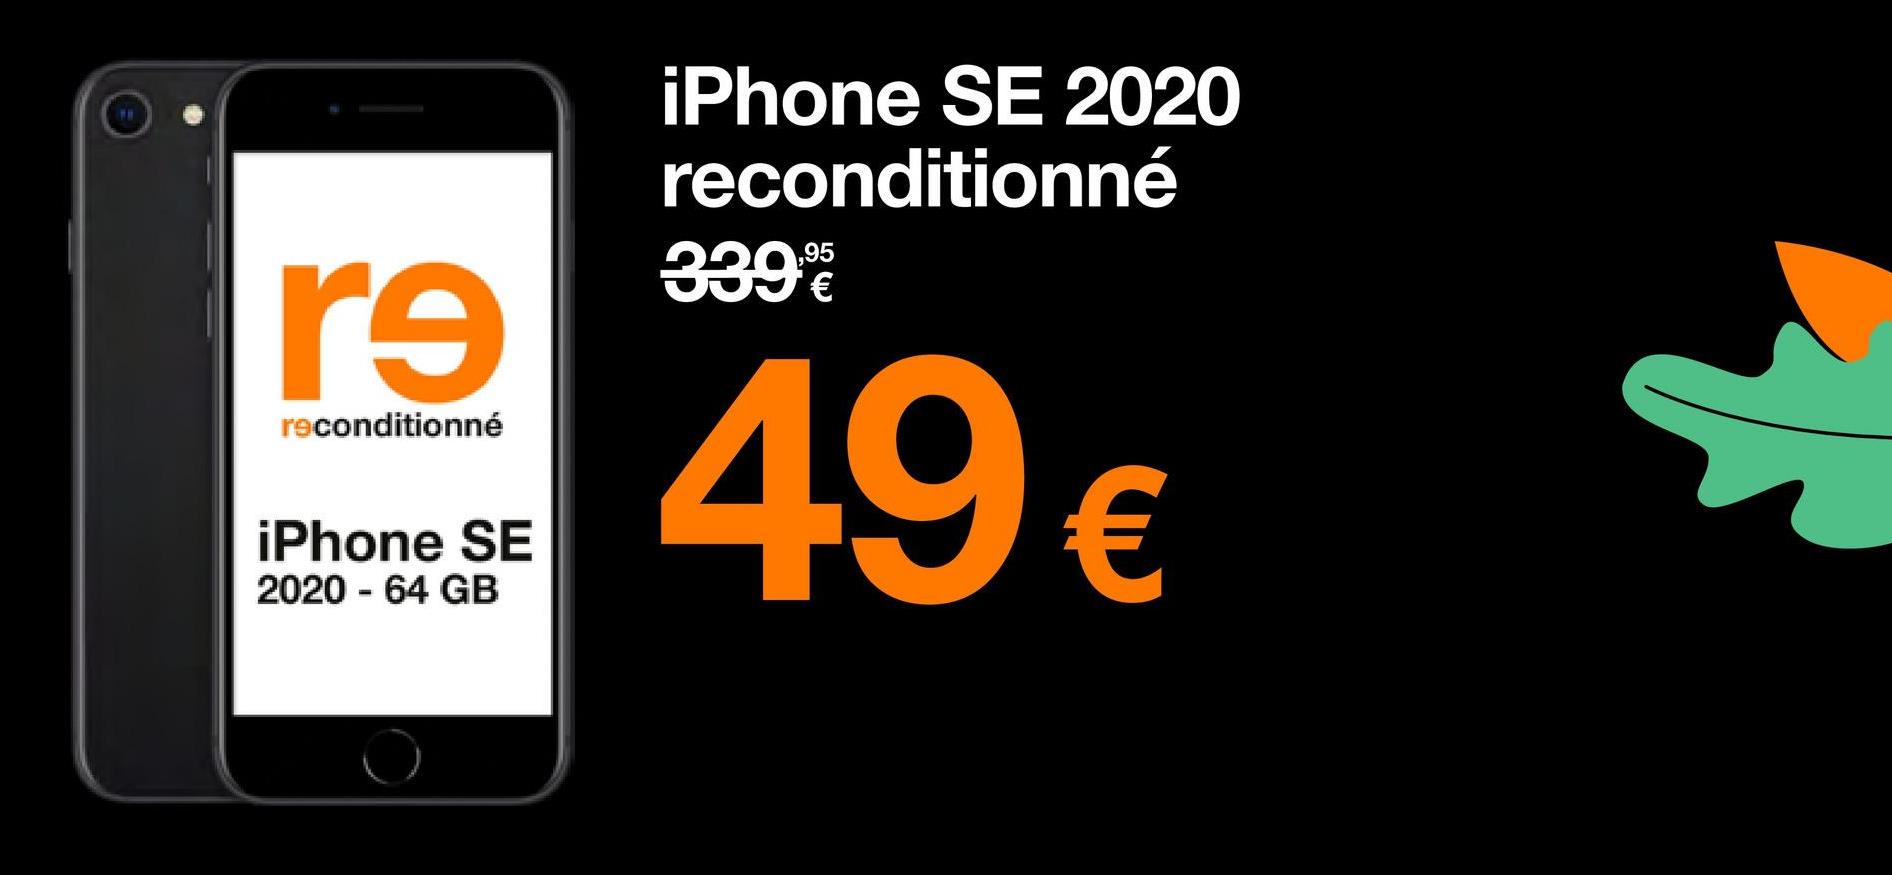 rs
reconditionné
iPhone SE
2020-64 GB
iPhone SE 2020
reconditionné
3392
49 €